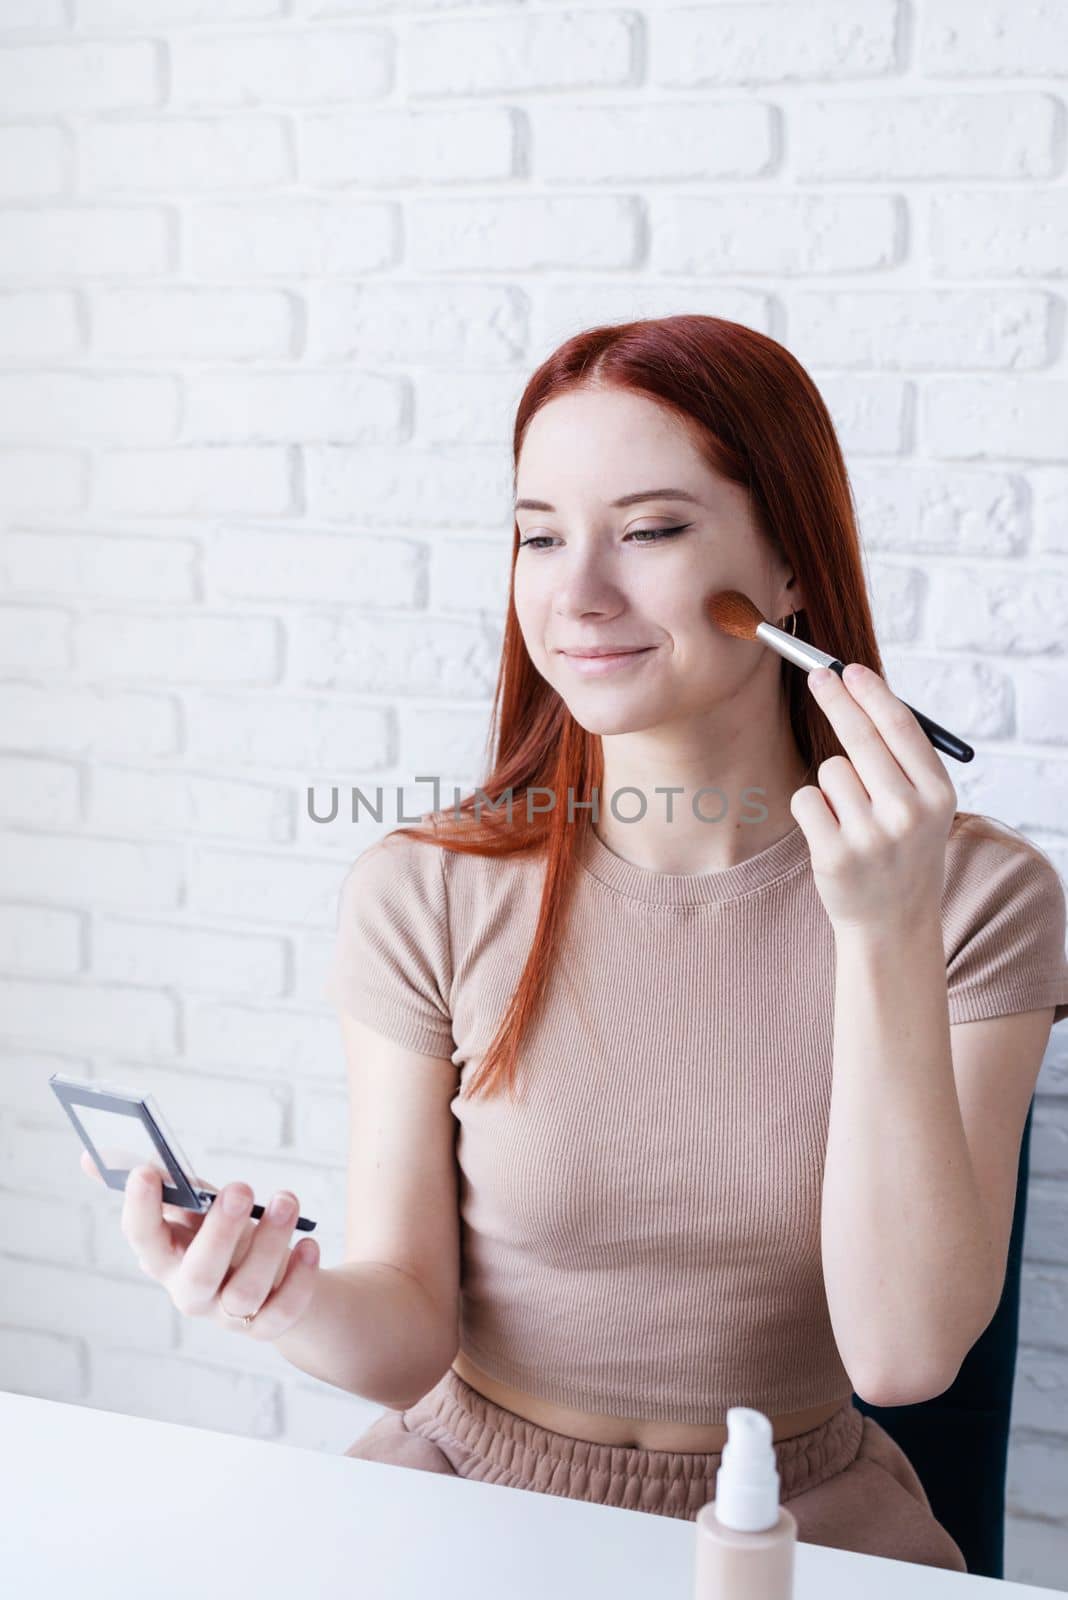 young woman making up at home, using eyeshadows by Desperada